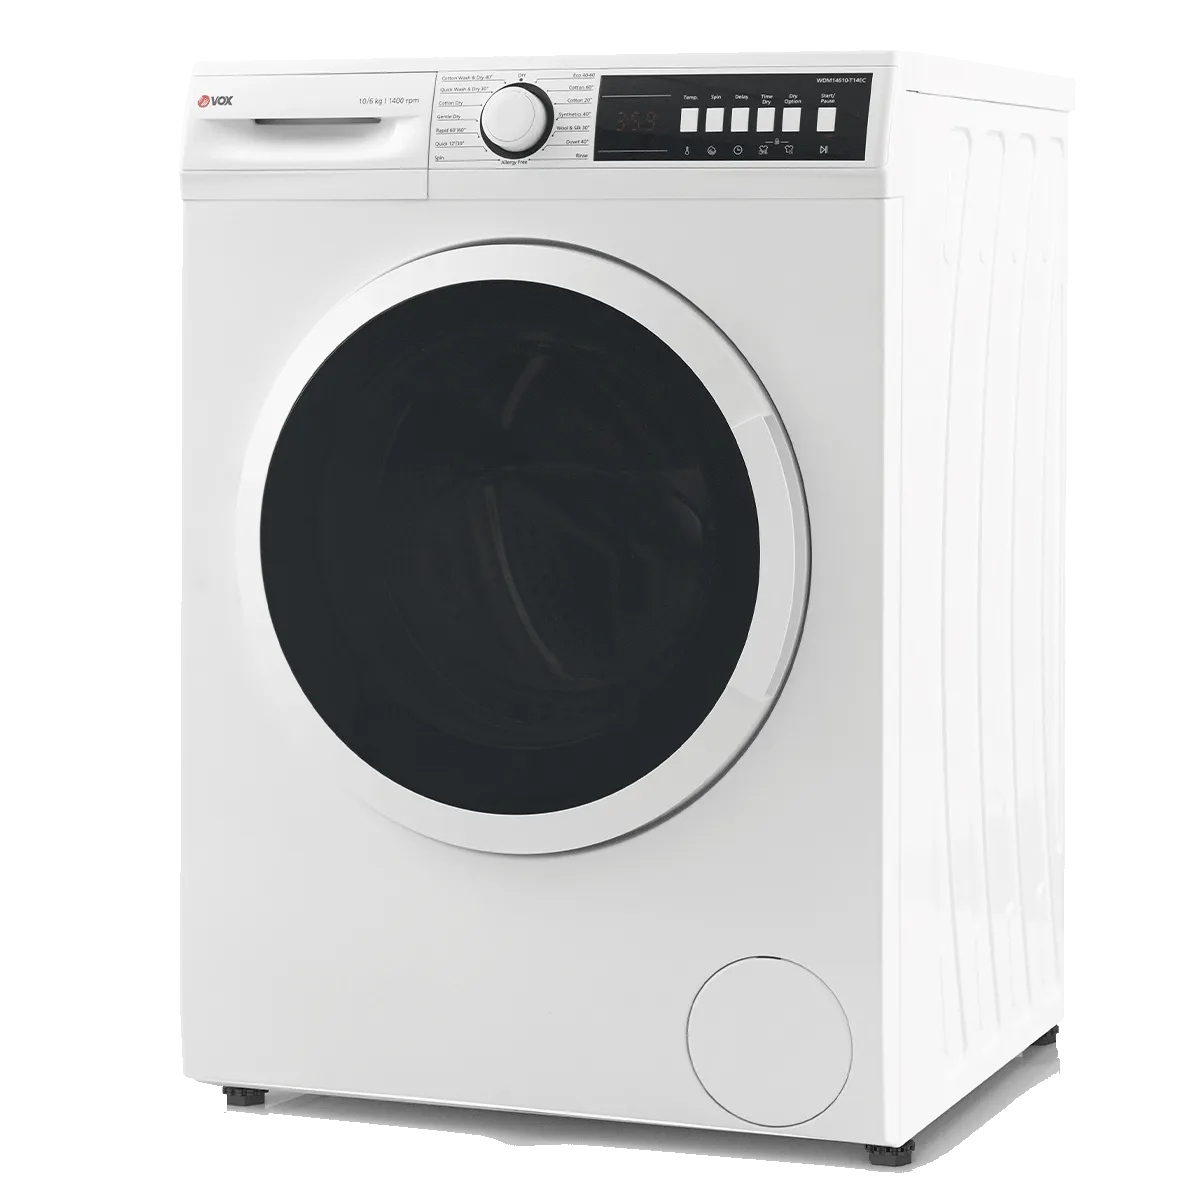 Washer-dryer machine WDM14610-T14EC 